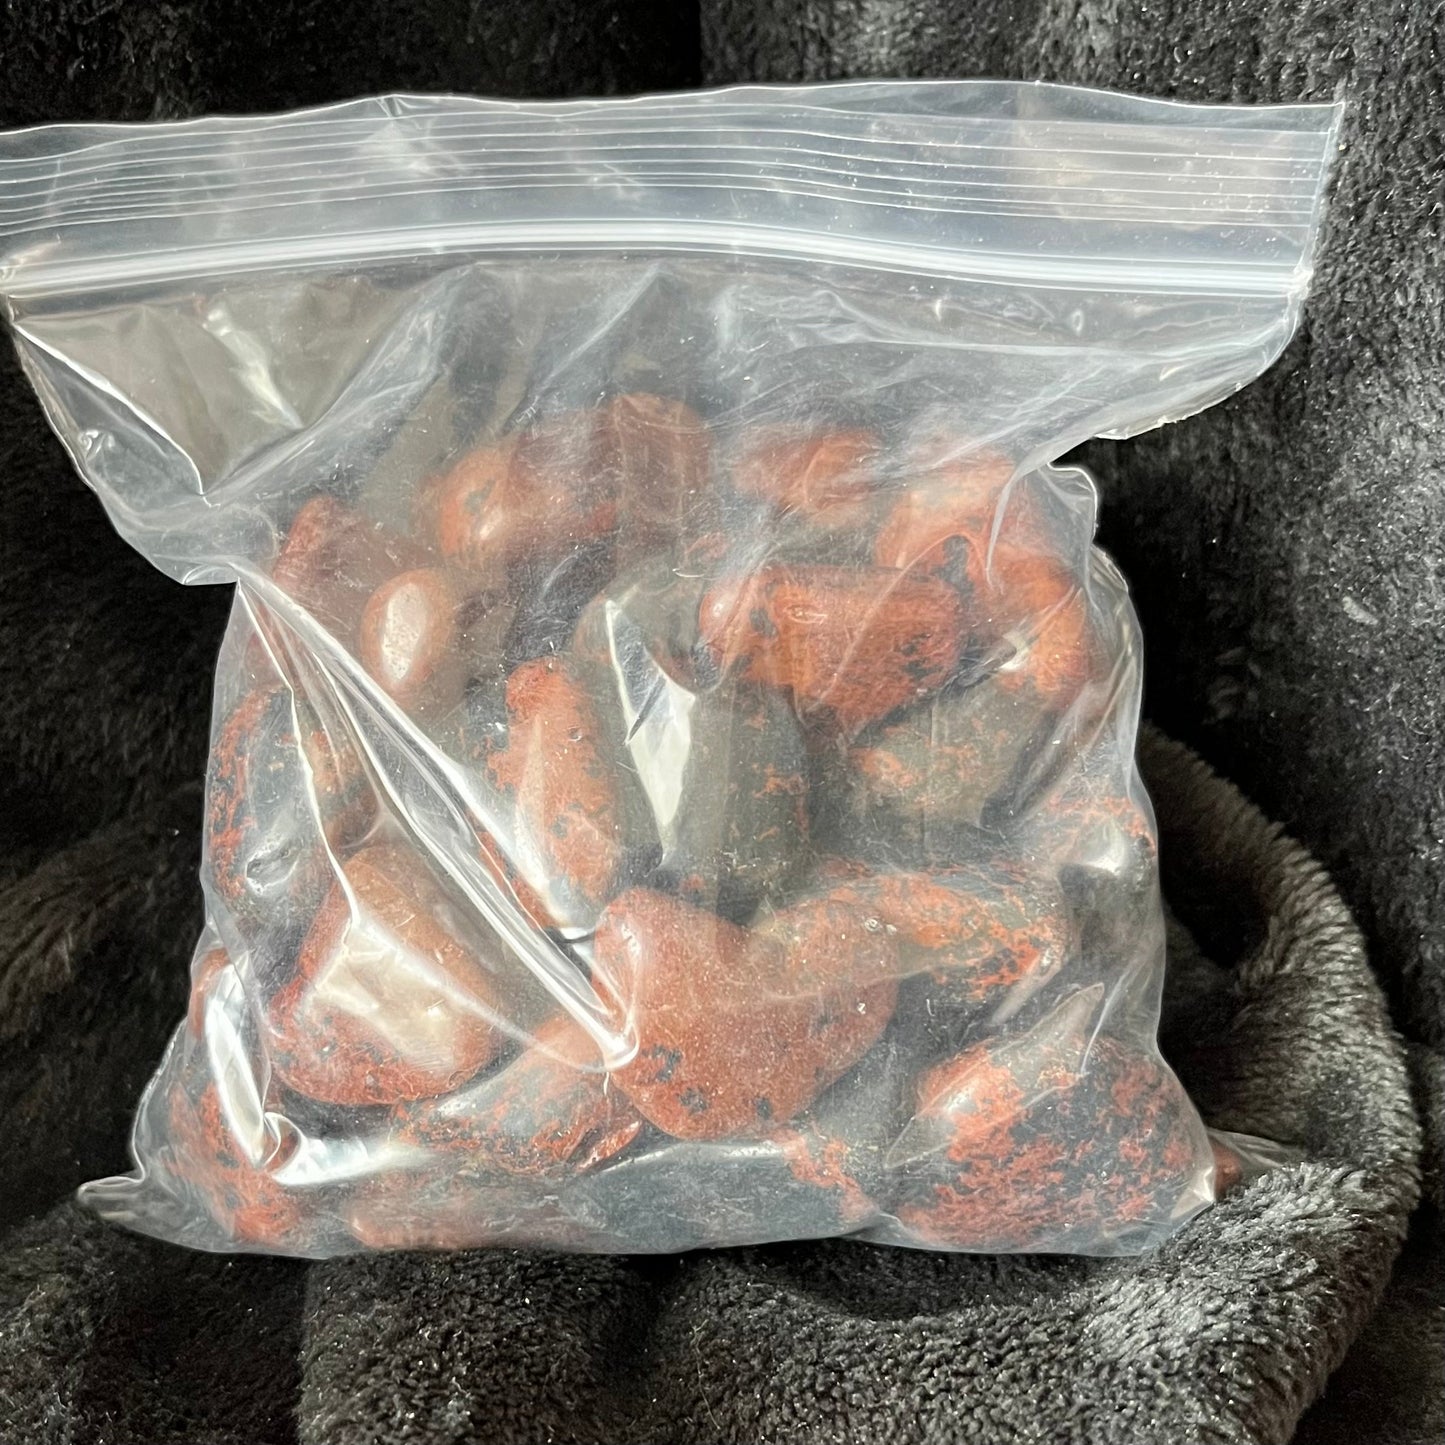 Mahogany Obsidian Tumbled Stone, 1 Pound Bag  WT-0088